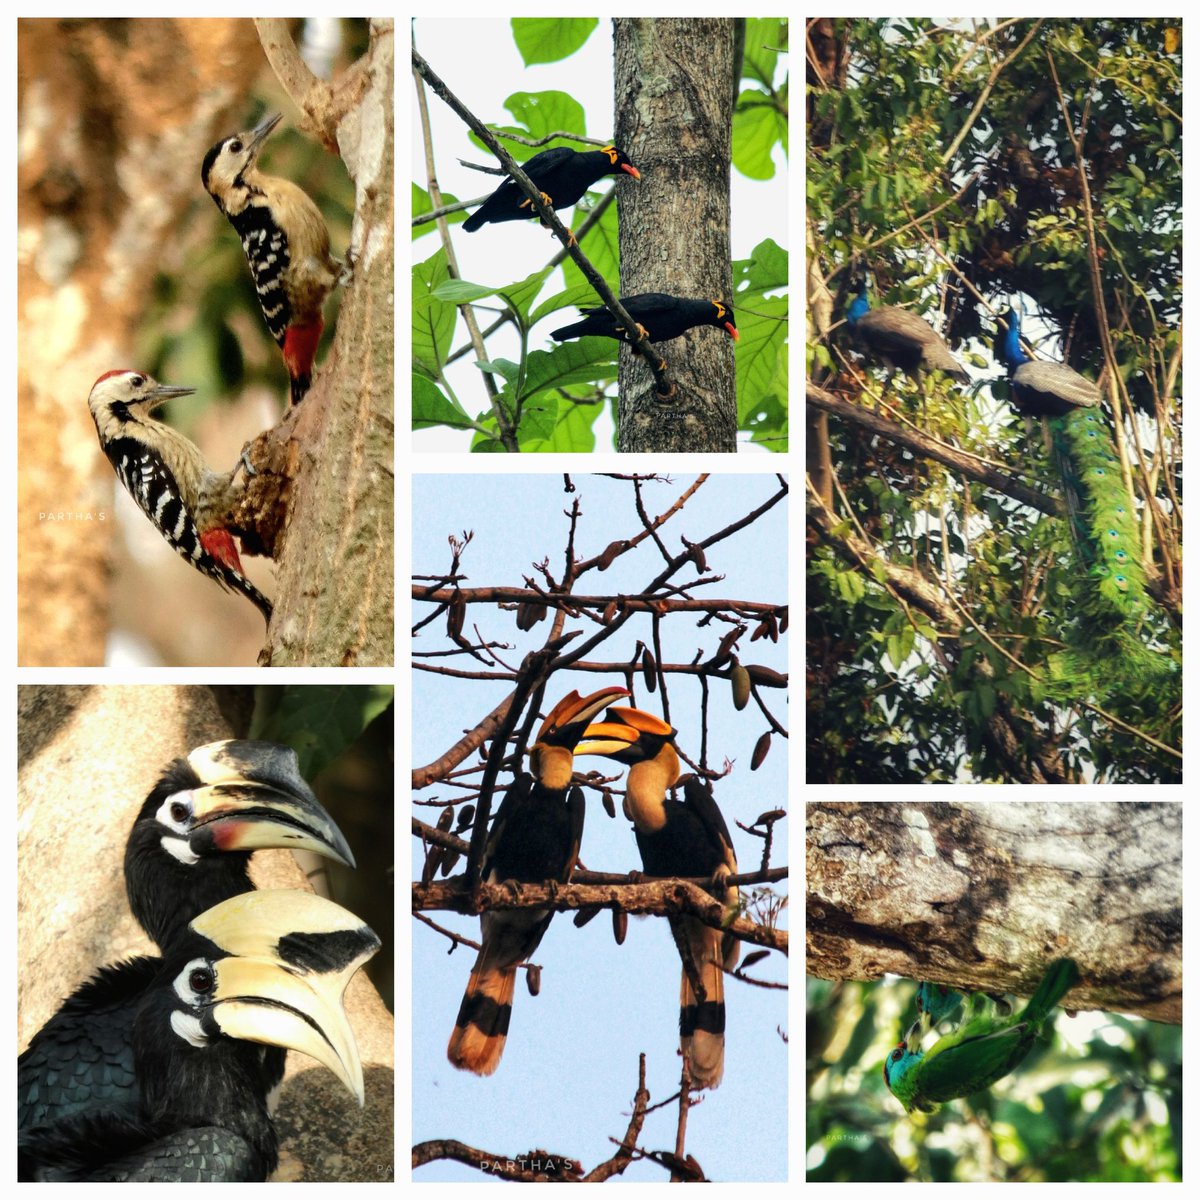 Duos of Mahananda
#IndiAves #TheDuos @IndiAves @NatGeoIndia @Britnatureguide @lumix_india @NatGeoPhotos #BirdsSeenIn2024 #BirdsOfTwitter #TwitterNatureCommunity #BBCWildlifePOTD #NaturePhotography #birdwatching #dailypic #photooftheday #birds #TwitterNaturePhotography #BirdsOfX